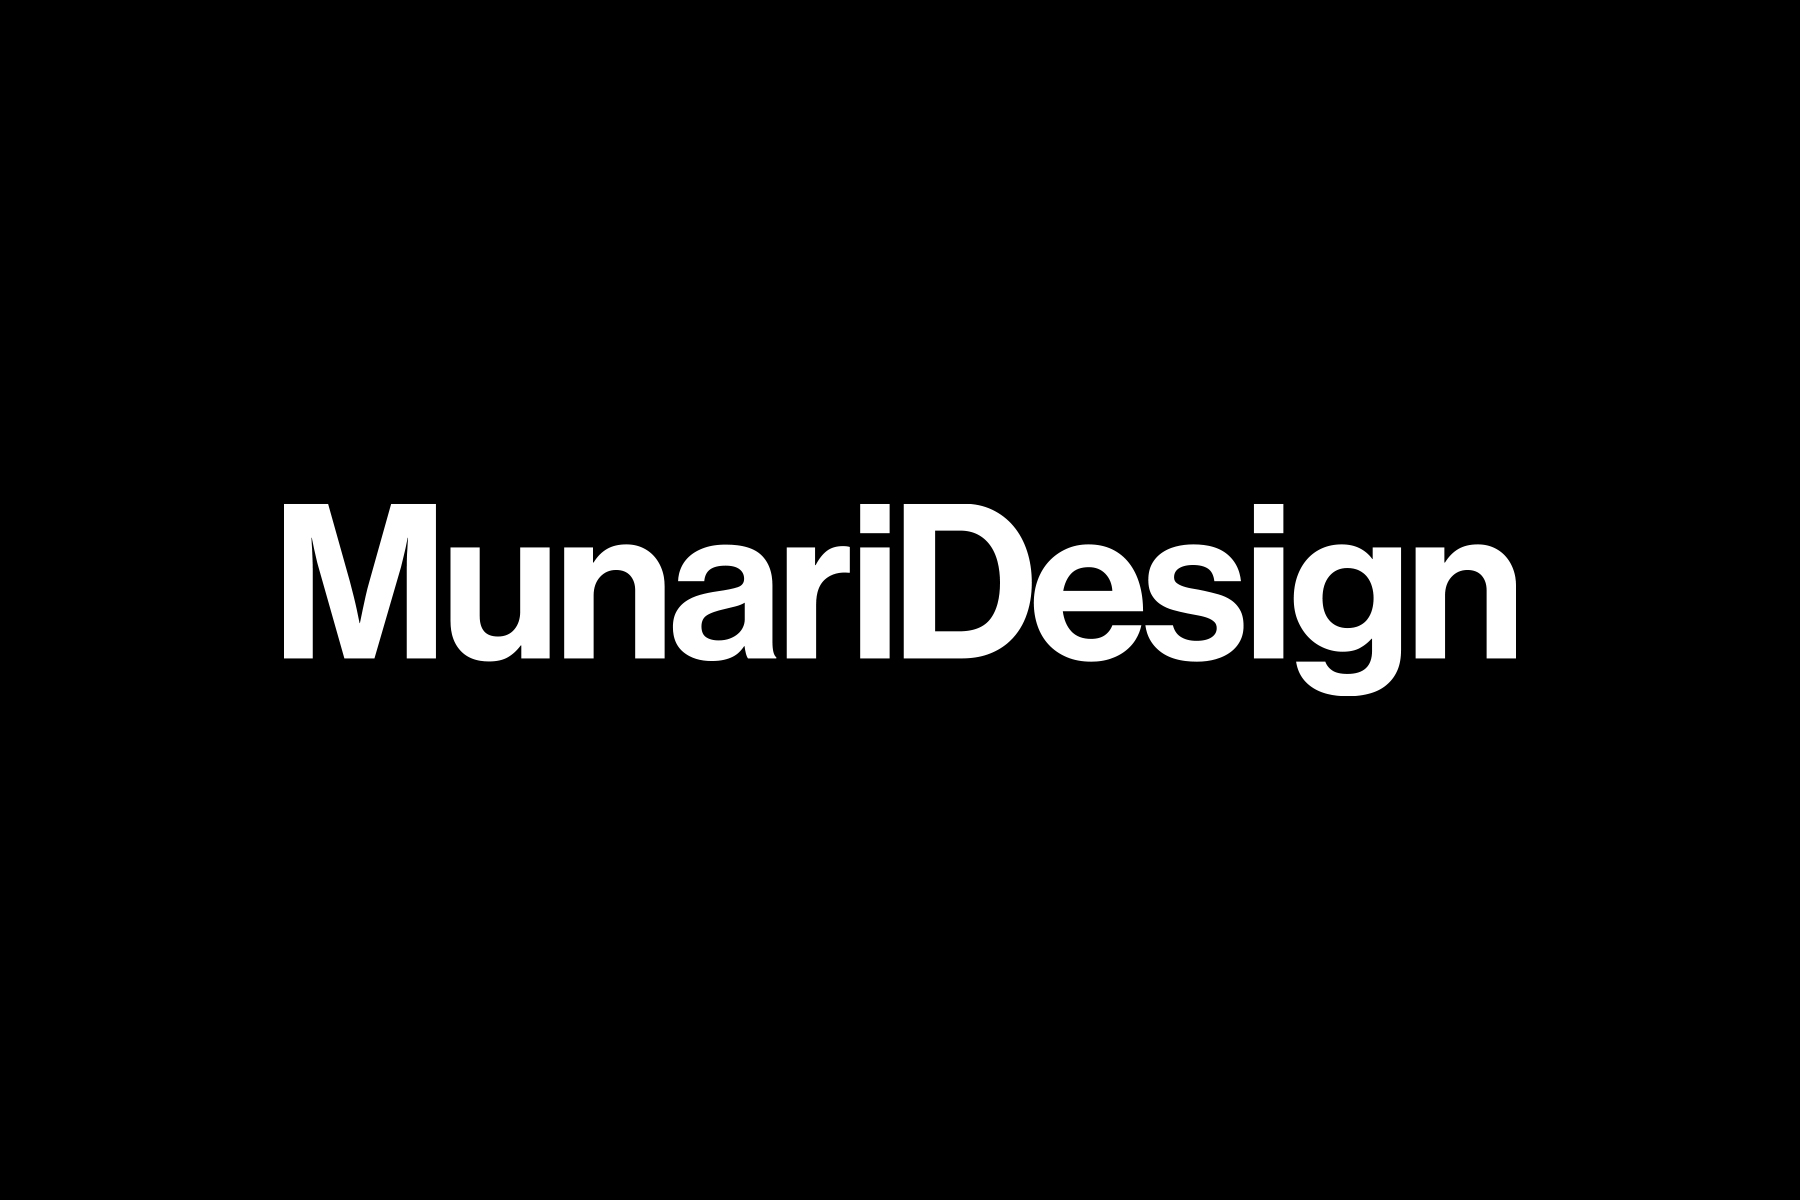 munari design logo